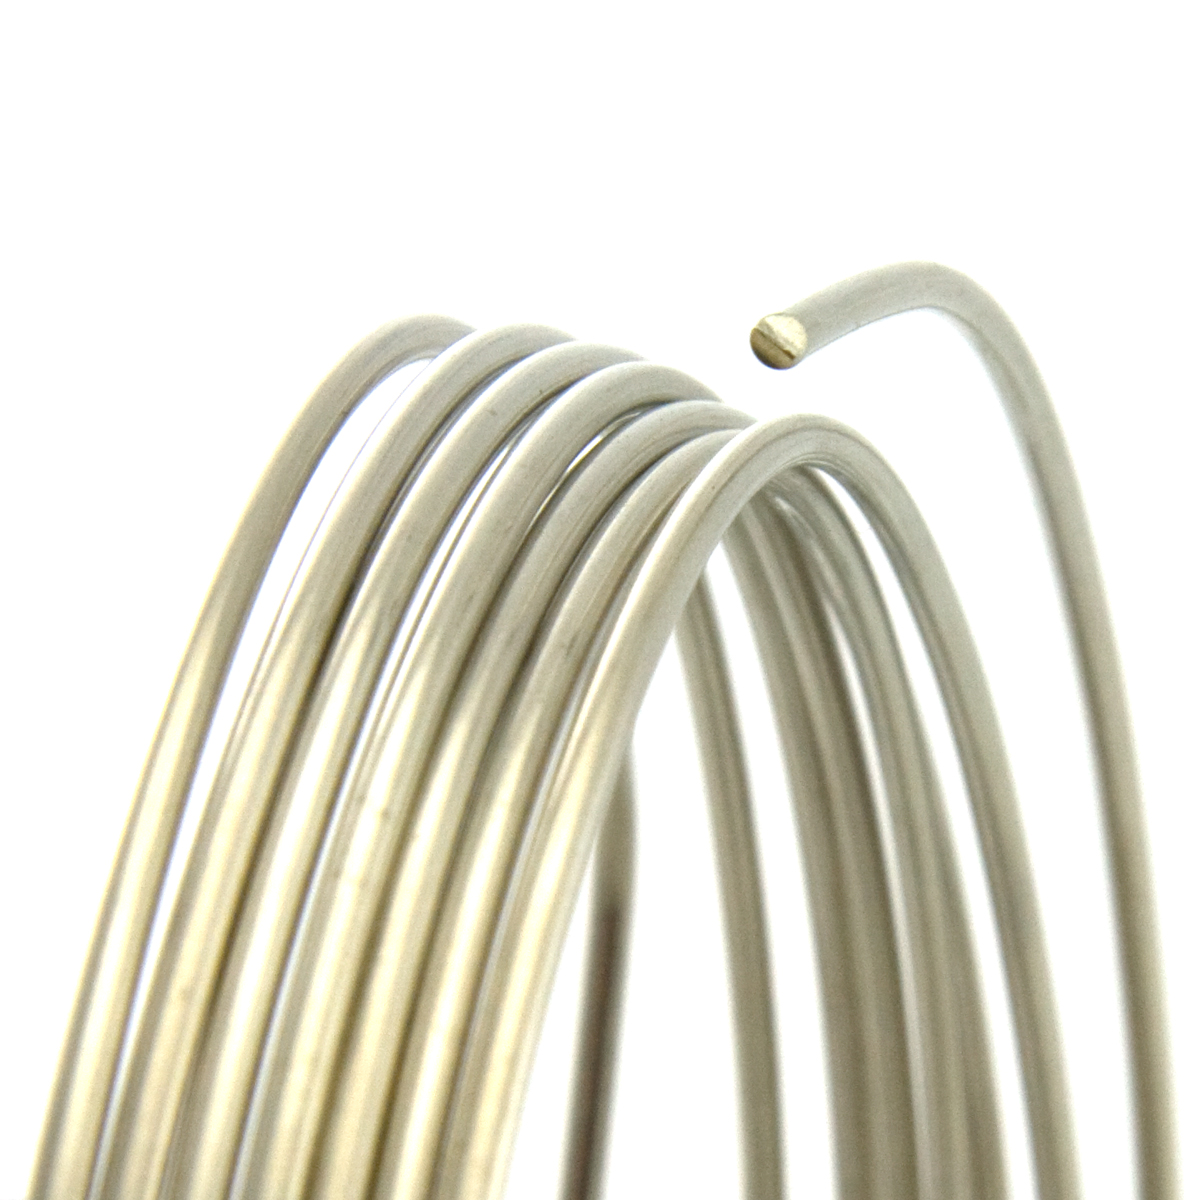 20 Gauge Round Half Hard Nickel Silver Wire: Jewelry Making